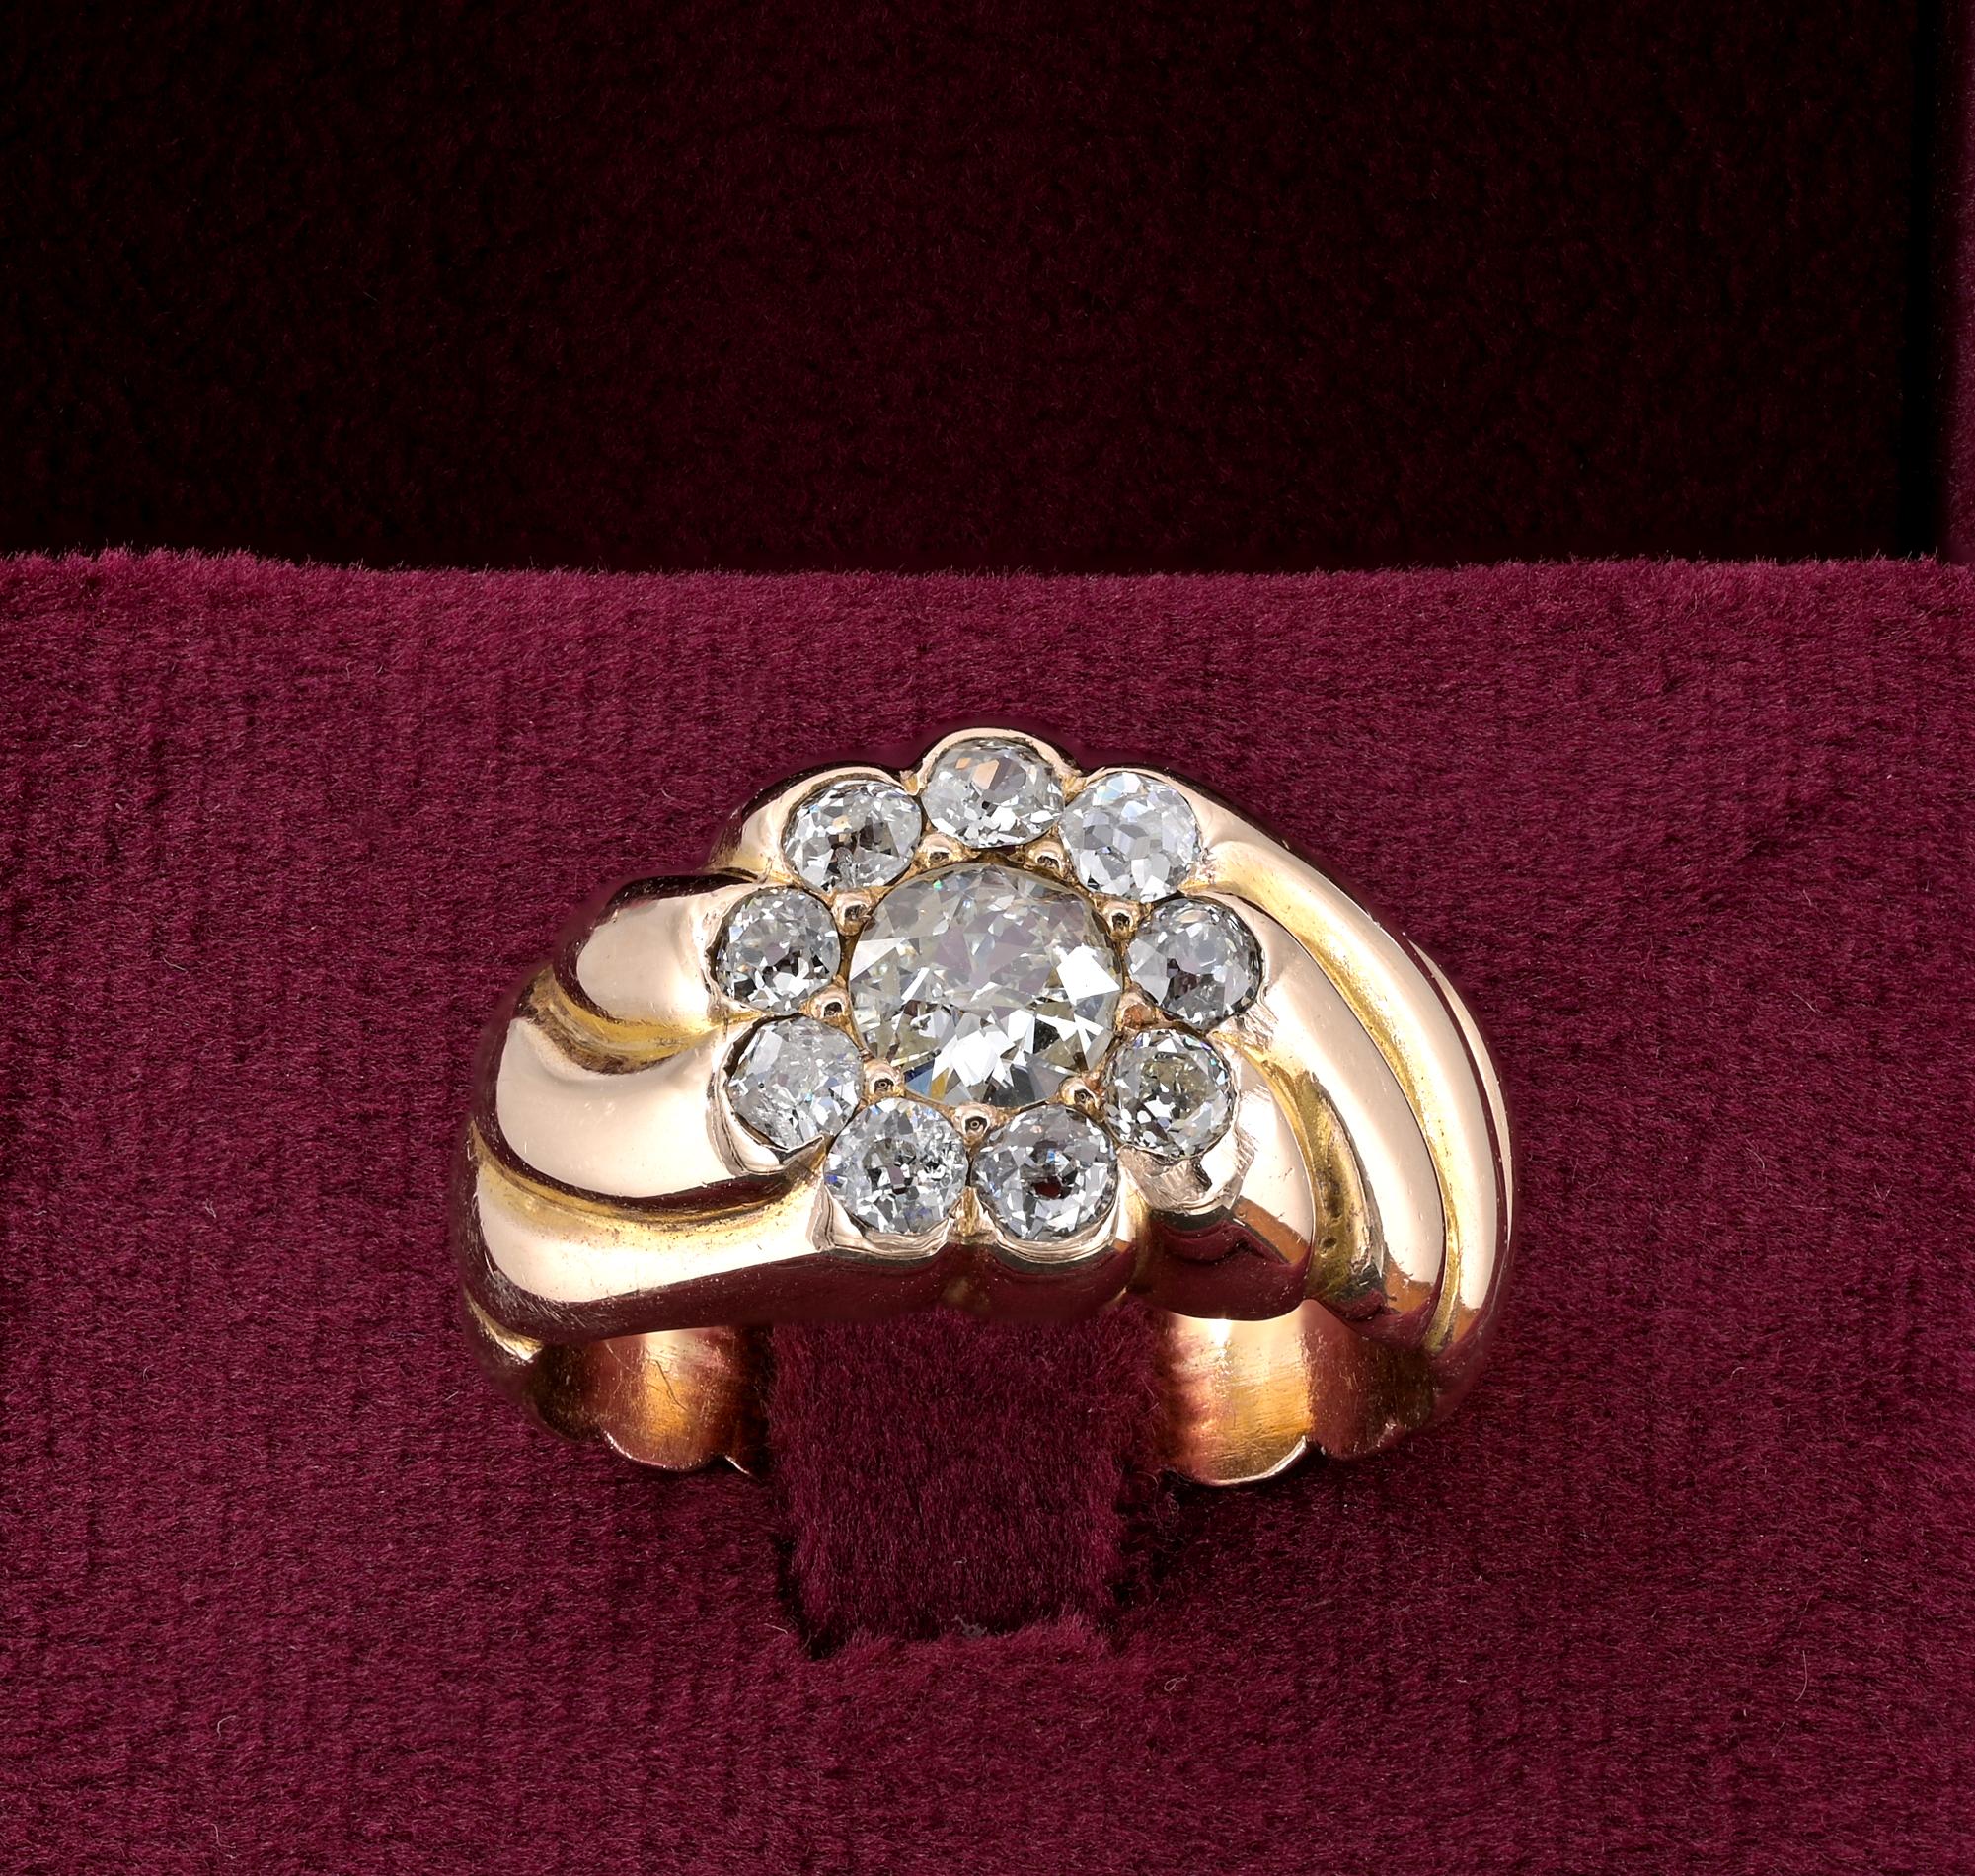 Dieser fabelhafte spätviktorianische Ring ist 1900 ca
Schöne geschnitzte gedrehte Halterung Hand aus massivem 18 KT Gold durch einen Cluster von Diamond zentriert
Gewicht: 11,8 Gramm
Set mit einer Auswahl an alten europäischen Schliff Zentrum